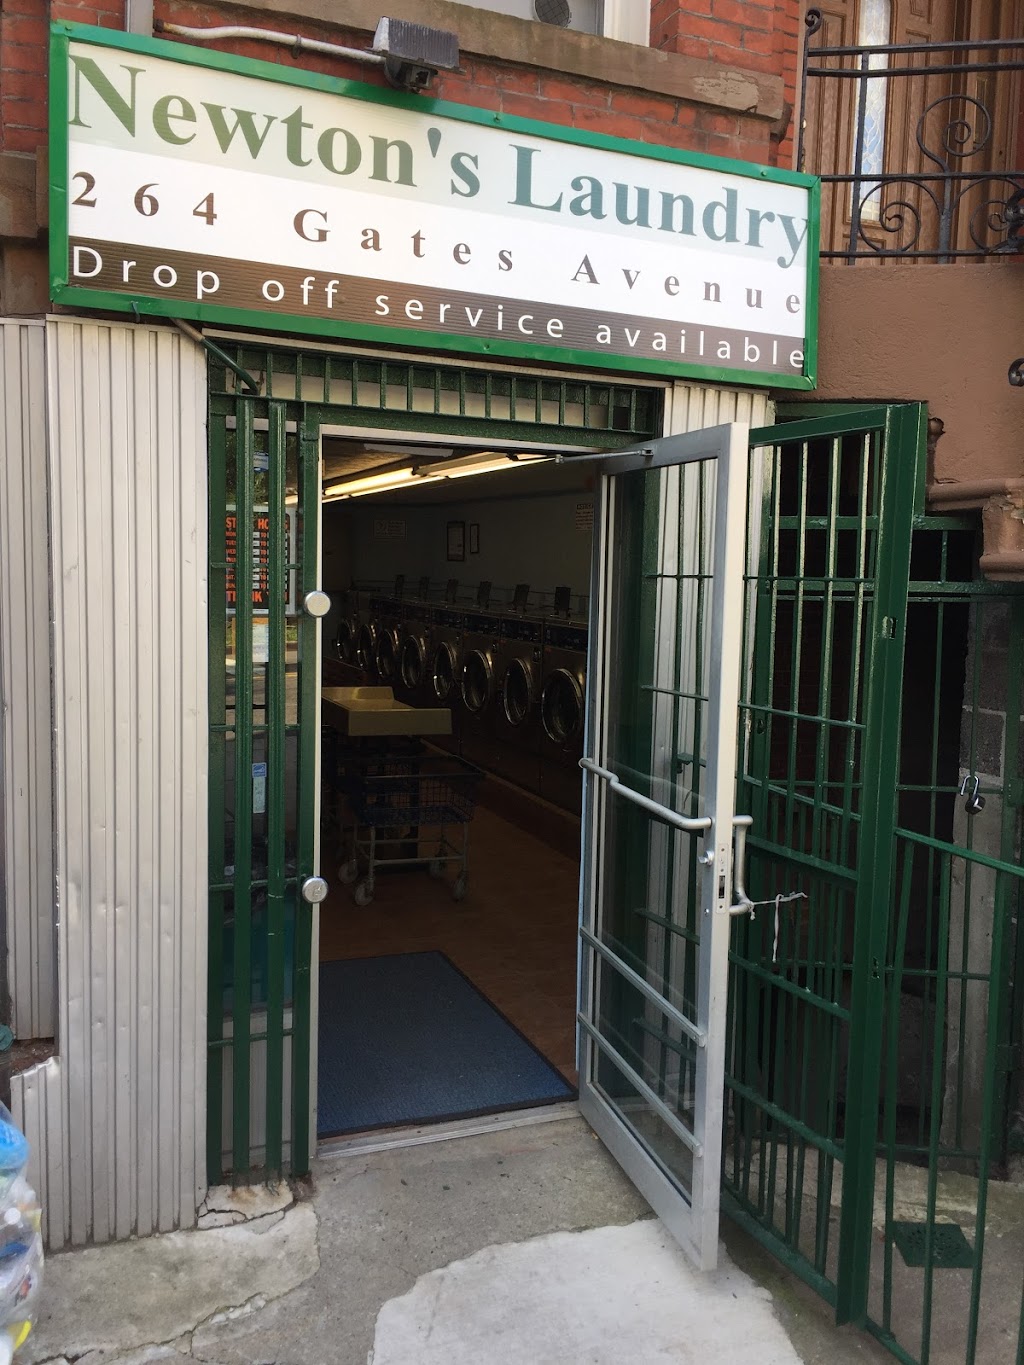 Newtons Laundromat | 264 Gates Ave #1305, Brooklyn, NY 11216 | Phone: (718) 930-8310